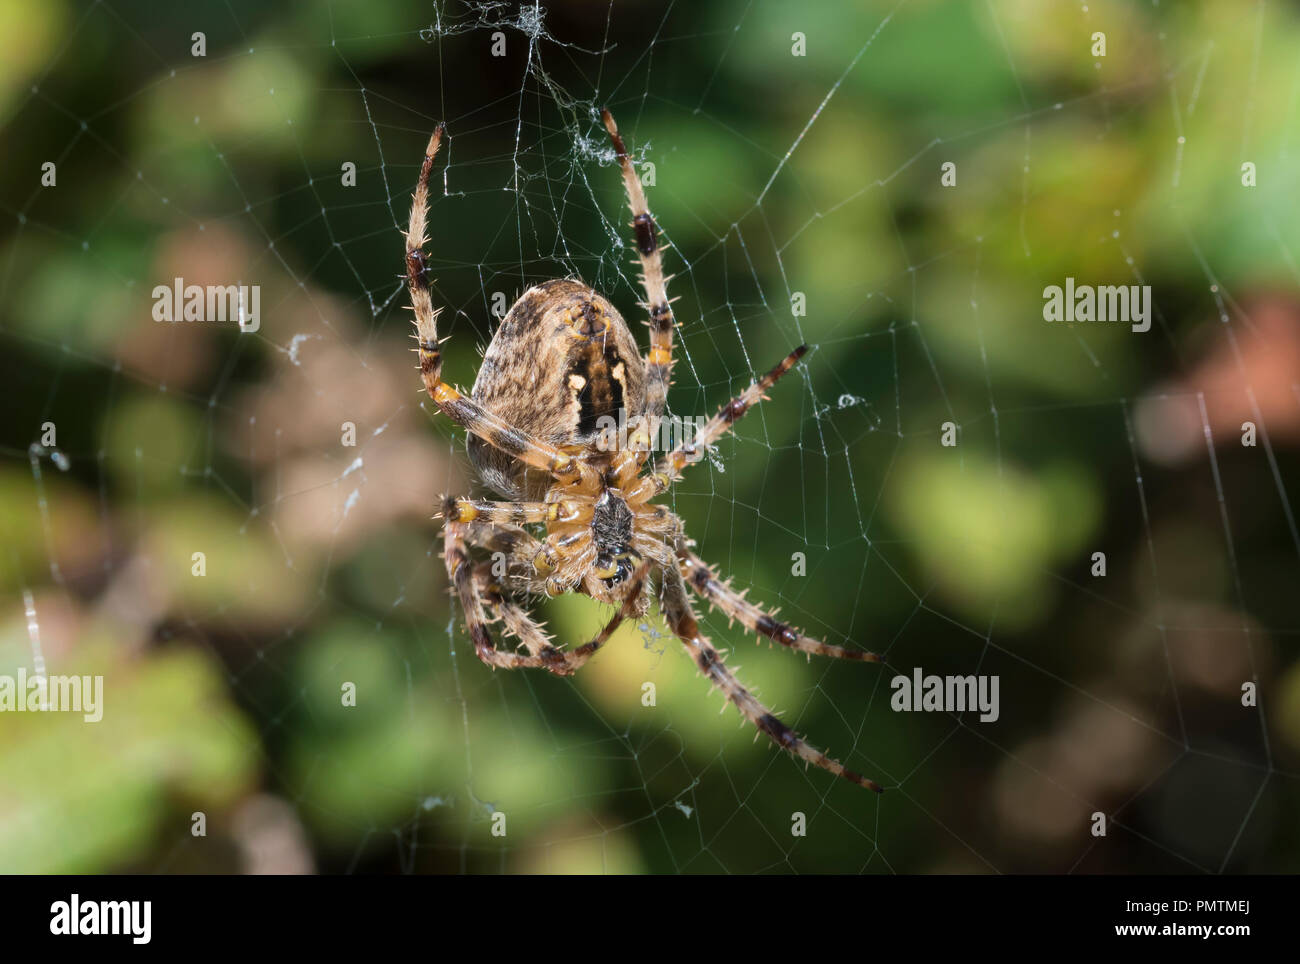 Araignée Araneus Diadematus (OrbWeaver, European Garden Spider, Spider Diadem, Cross Spider) sur un site web à l'automne au Royaume-Uni. Gros plan d'araignées. Macro araignée. Banque D'Images